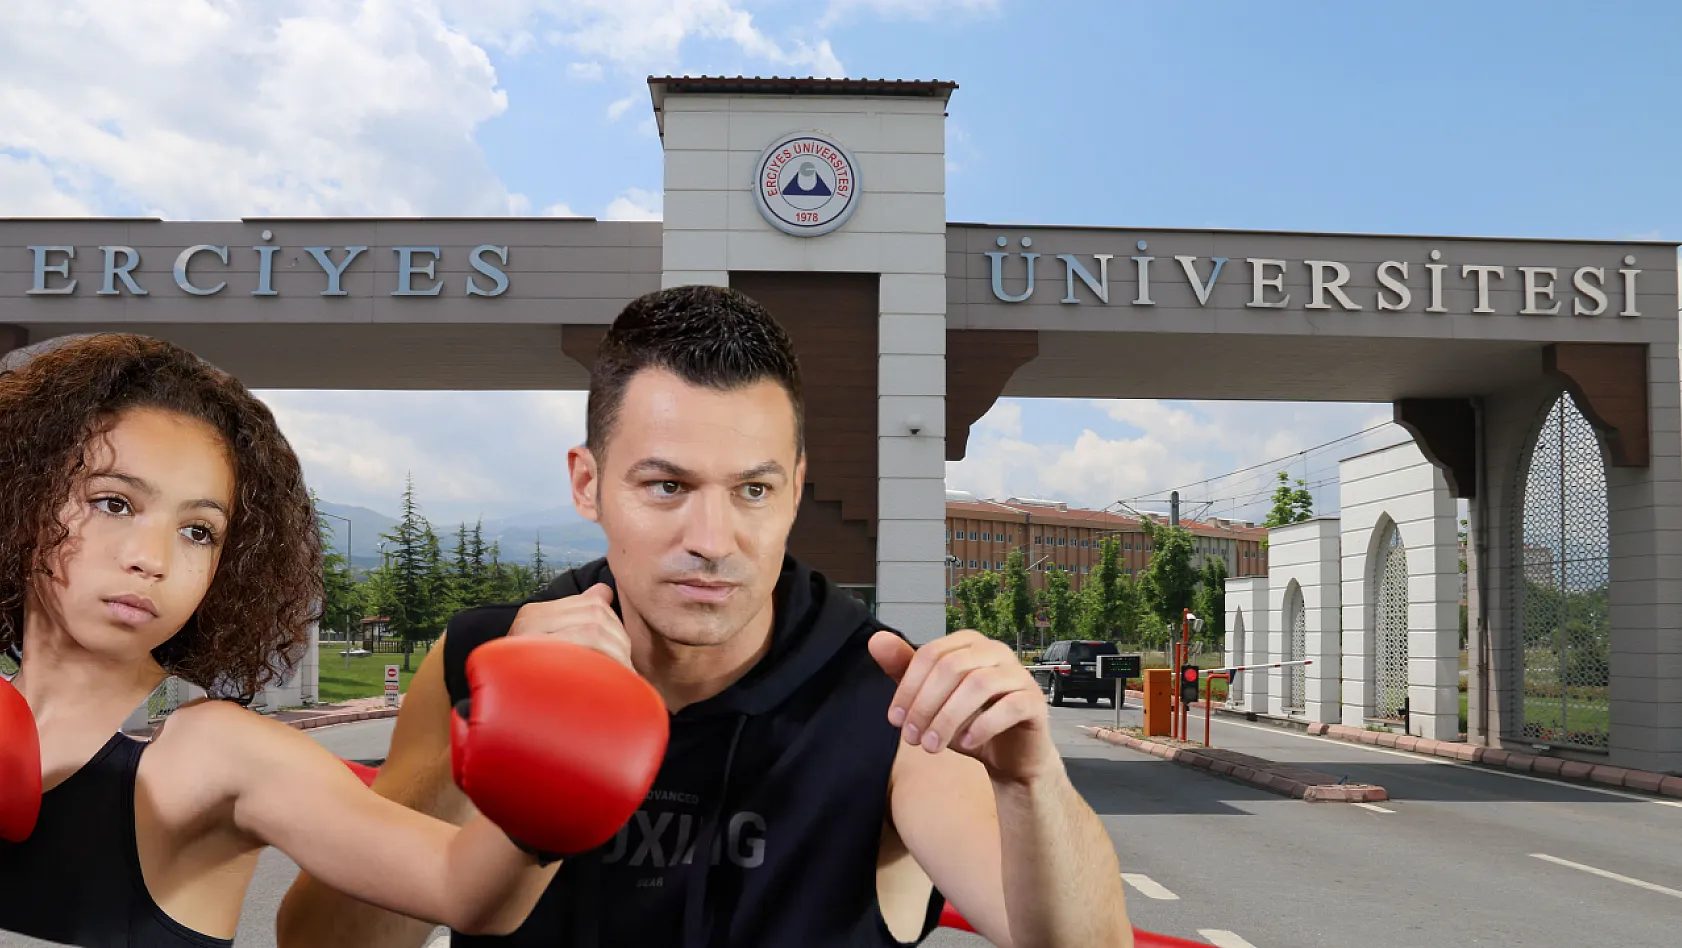 Erciyes Üniversitesi Boksçu arıyor! İşte nedeni